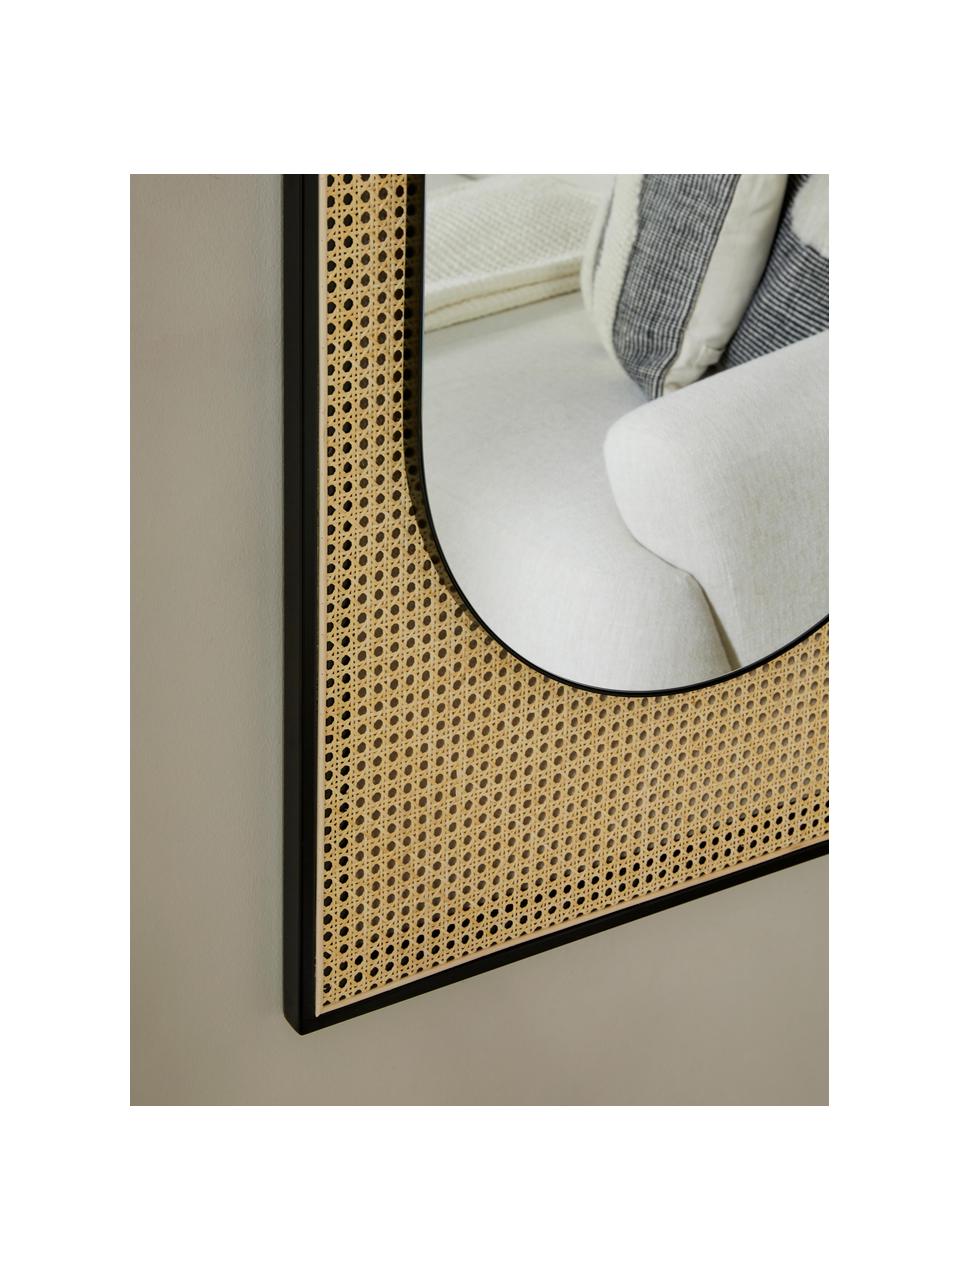 Ovale wandspiegel Esma met Weens vlechtwerk, Frame: metaal, rotan, Zwart, beige, B 66 x H 162 cm